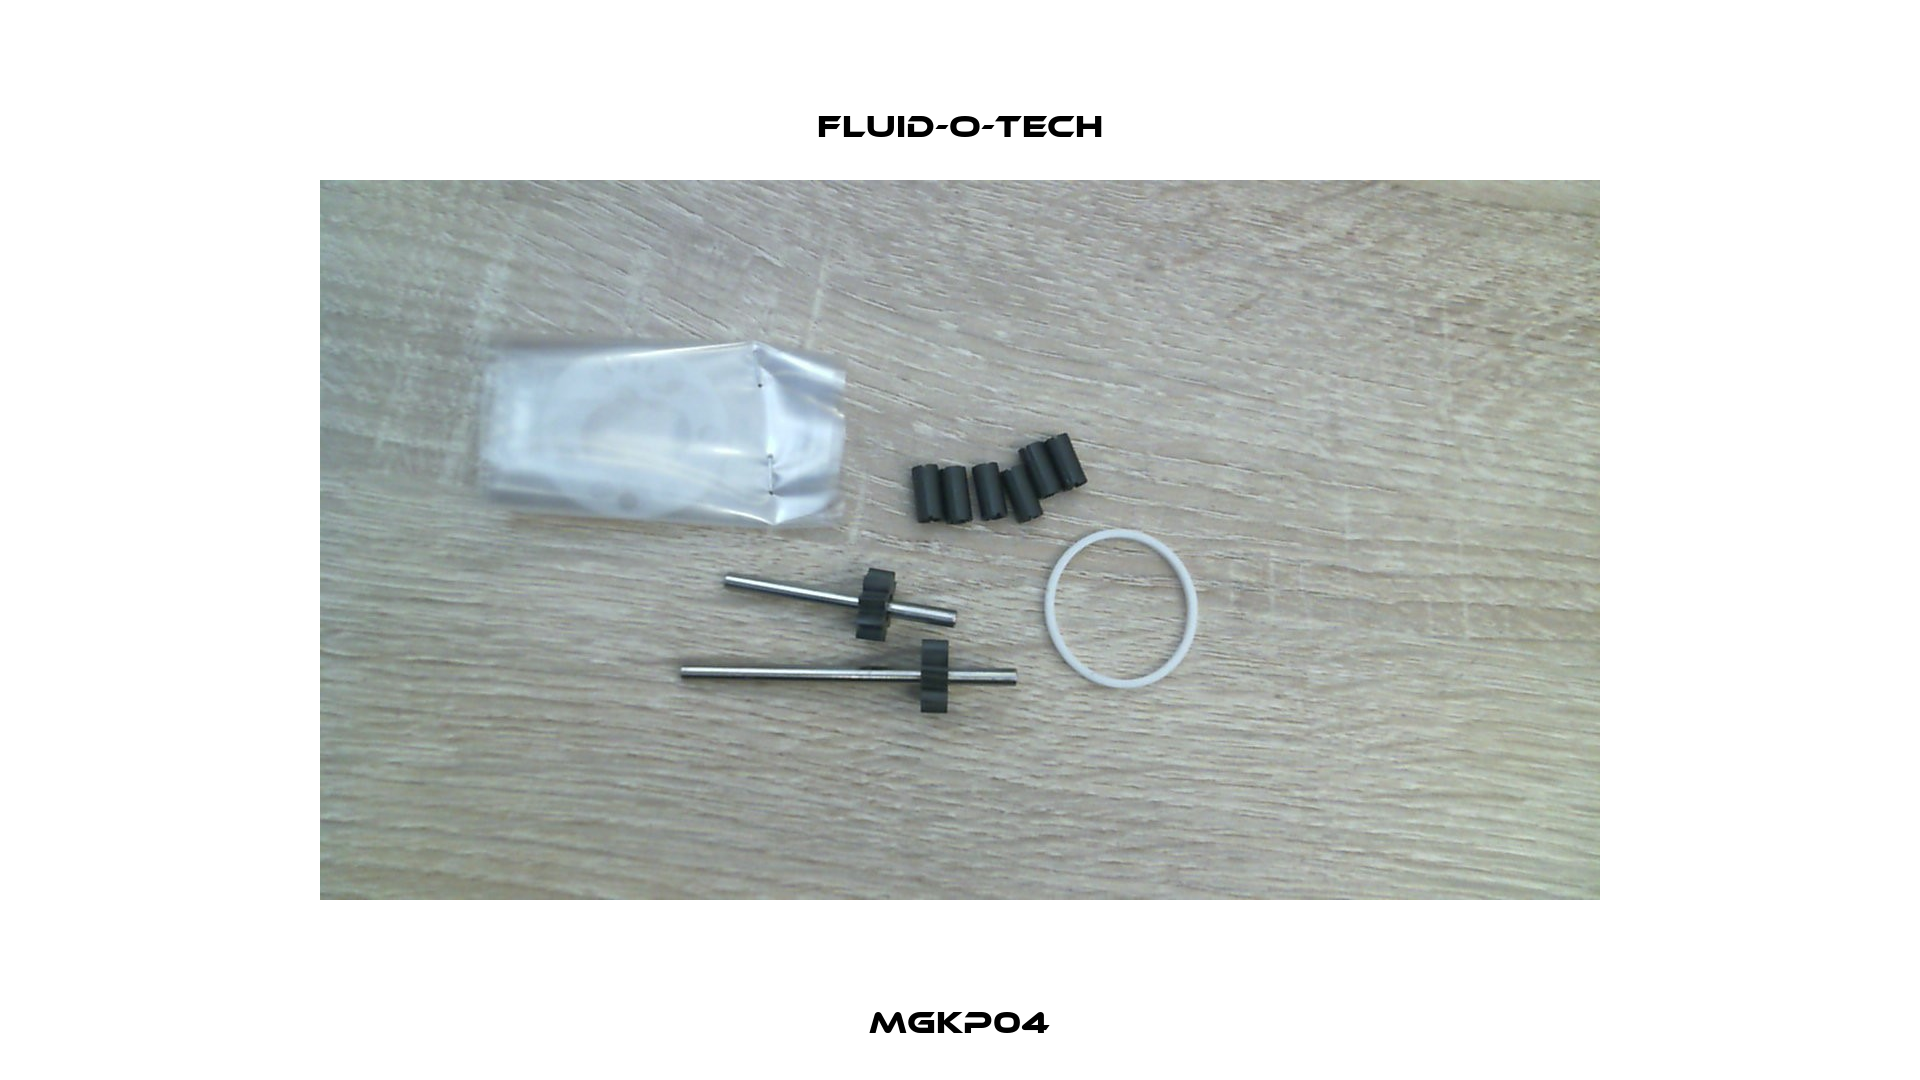 MGKP04 Fluid-O-Tech